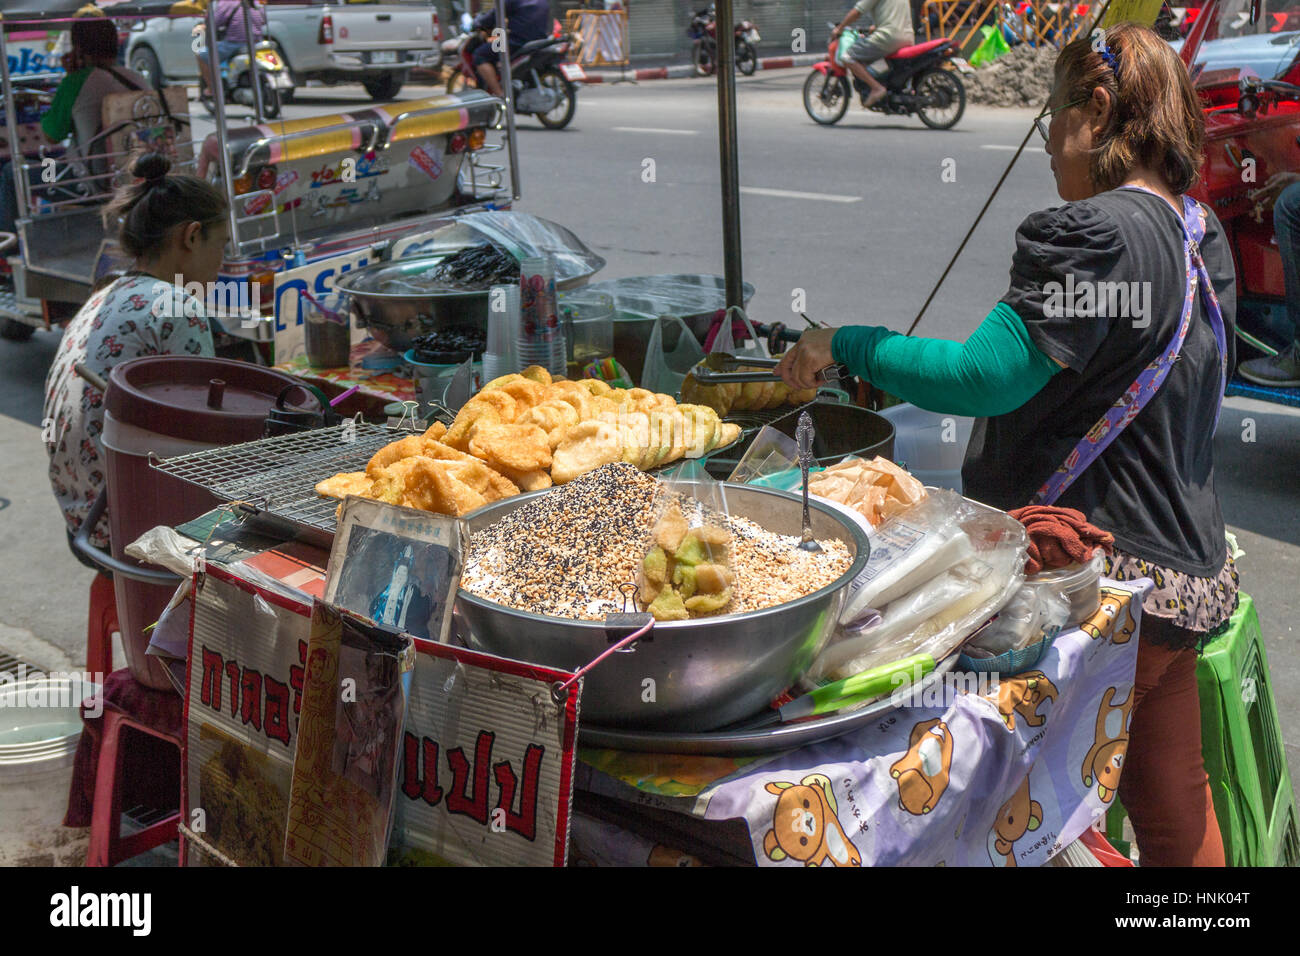 De vendeurs d'aliments de rue dans le quartier chinois, Bangkok, Thaïlande Banque D'Images